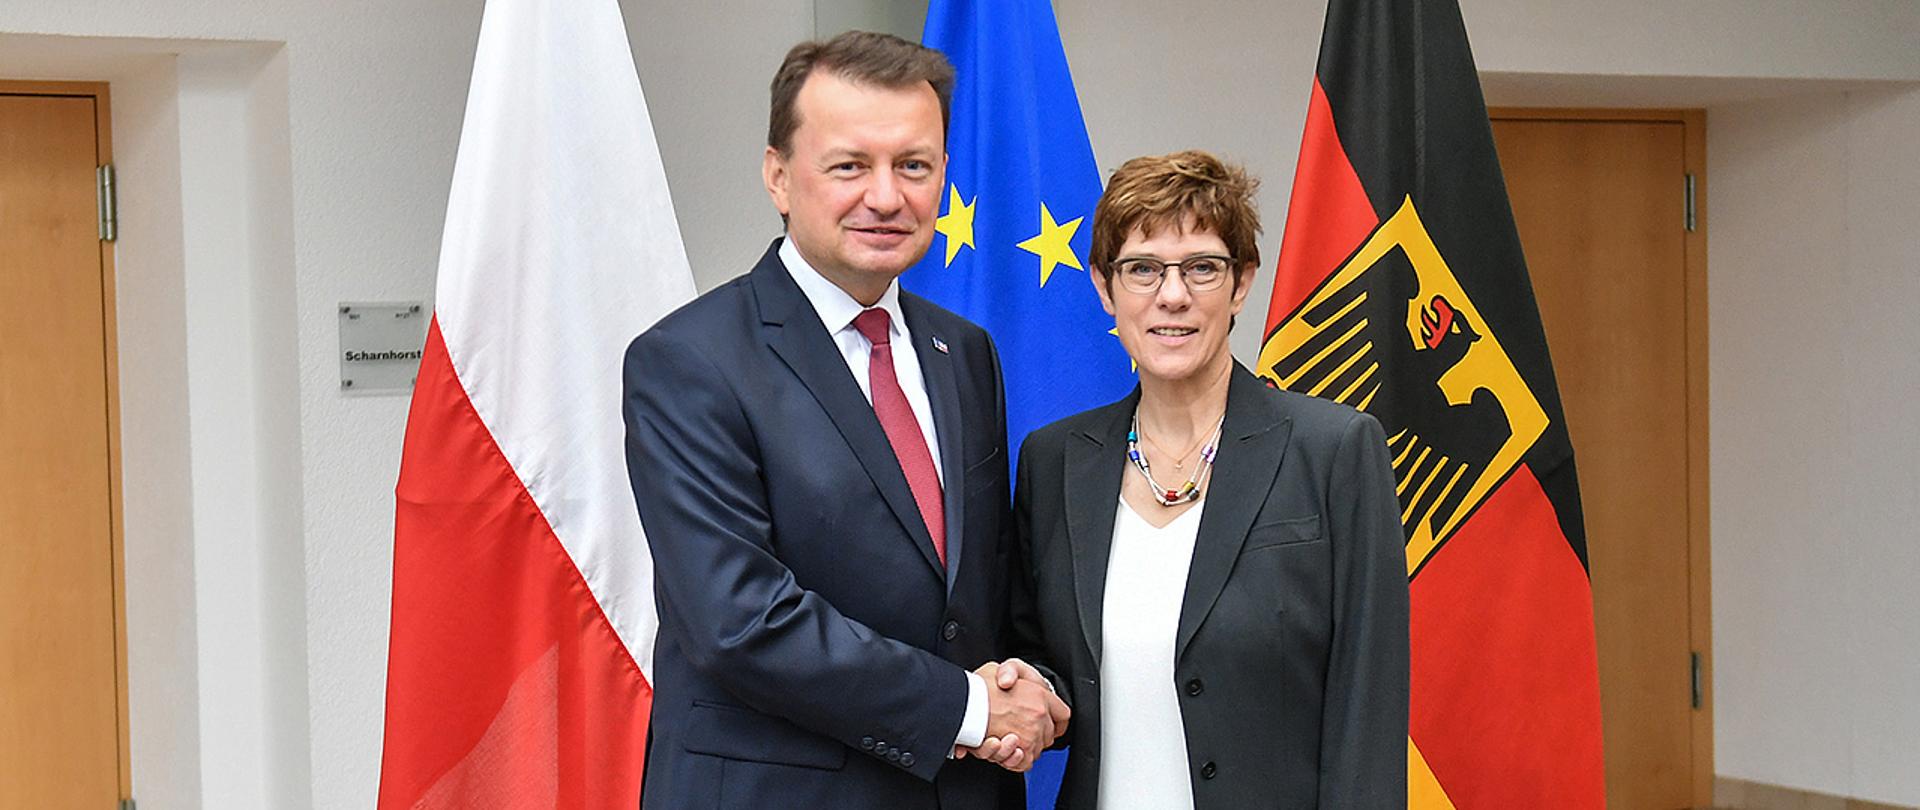 Minister M. Blaszczak greets Minister Annegret Kramp-Karrenbauer in Berlin 